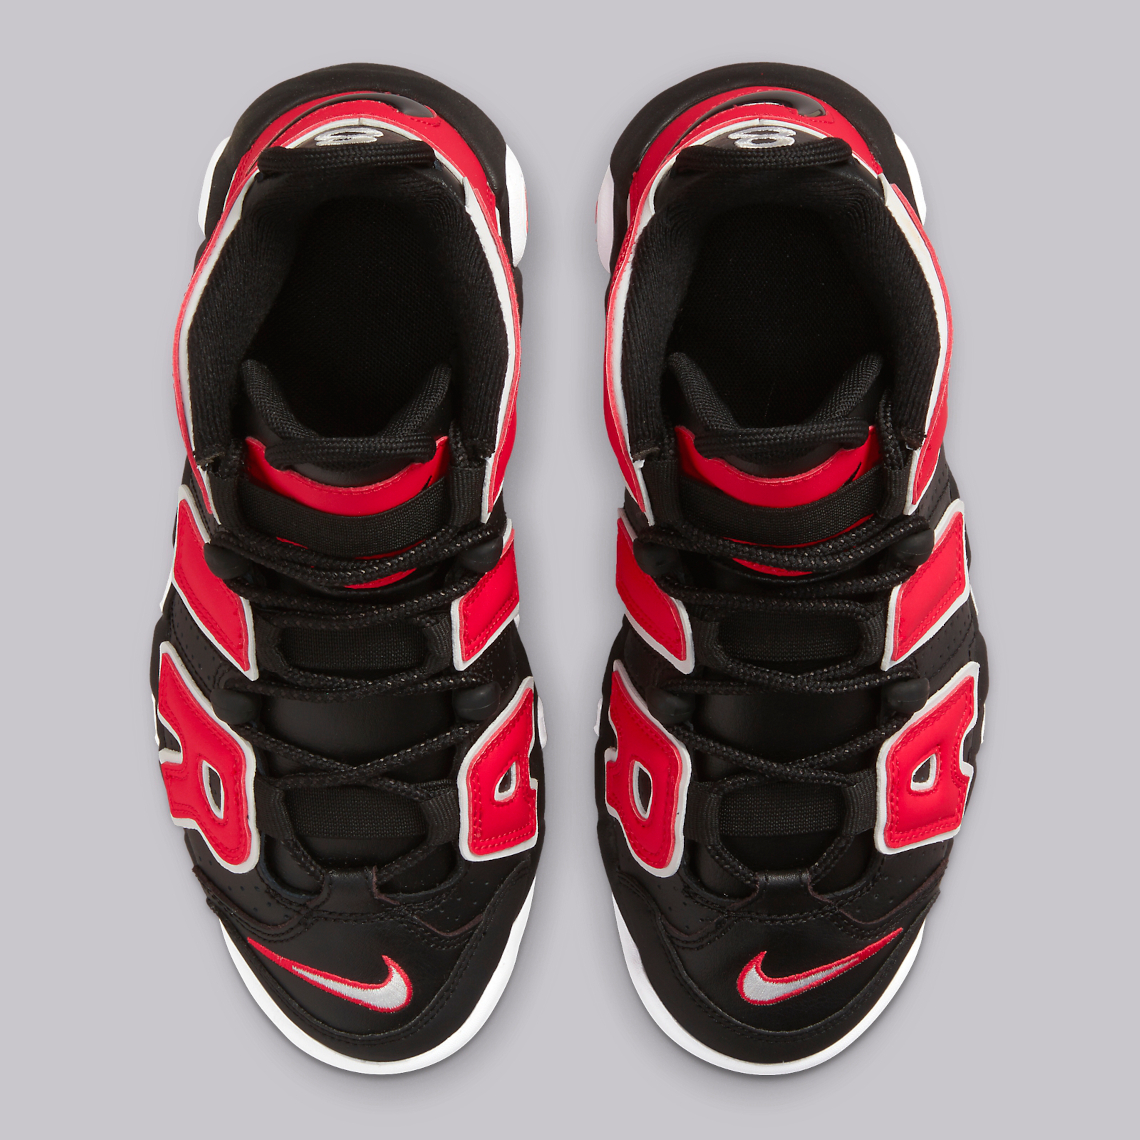 Nike Air More Uptempo Black Red GS DM3190-001 | SneakerNews.com حارس